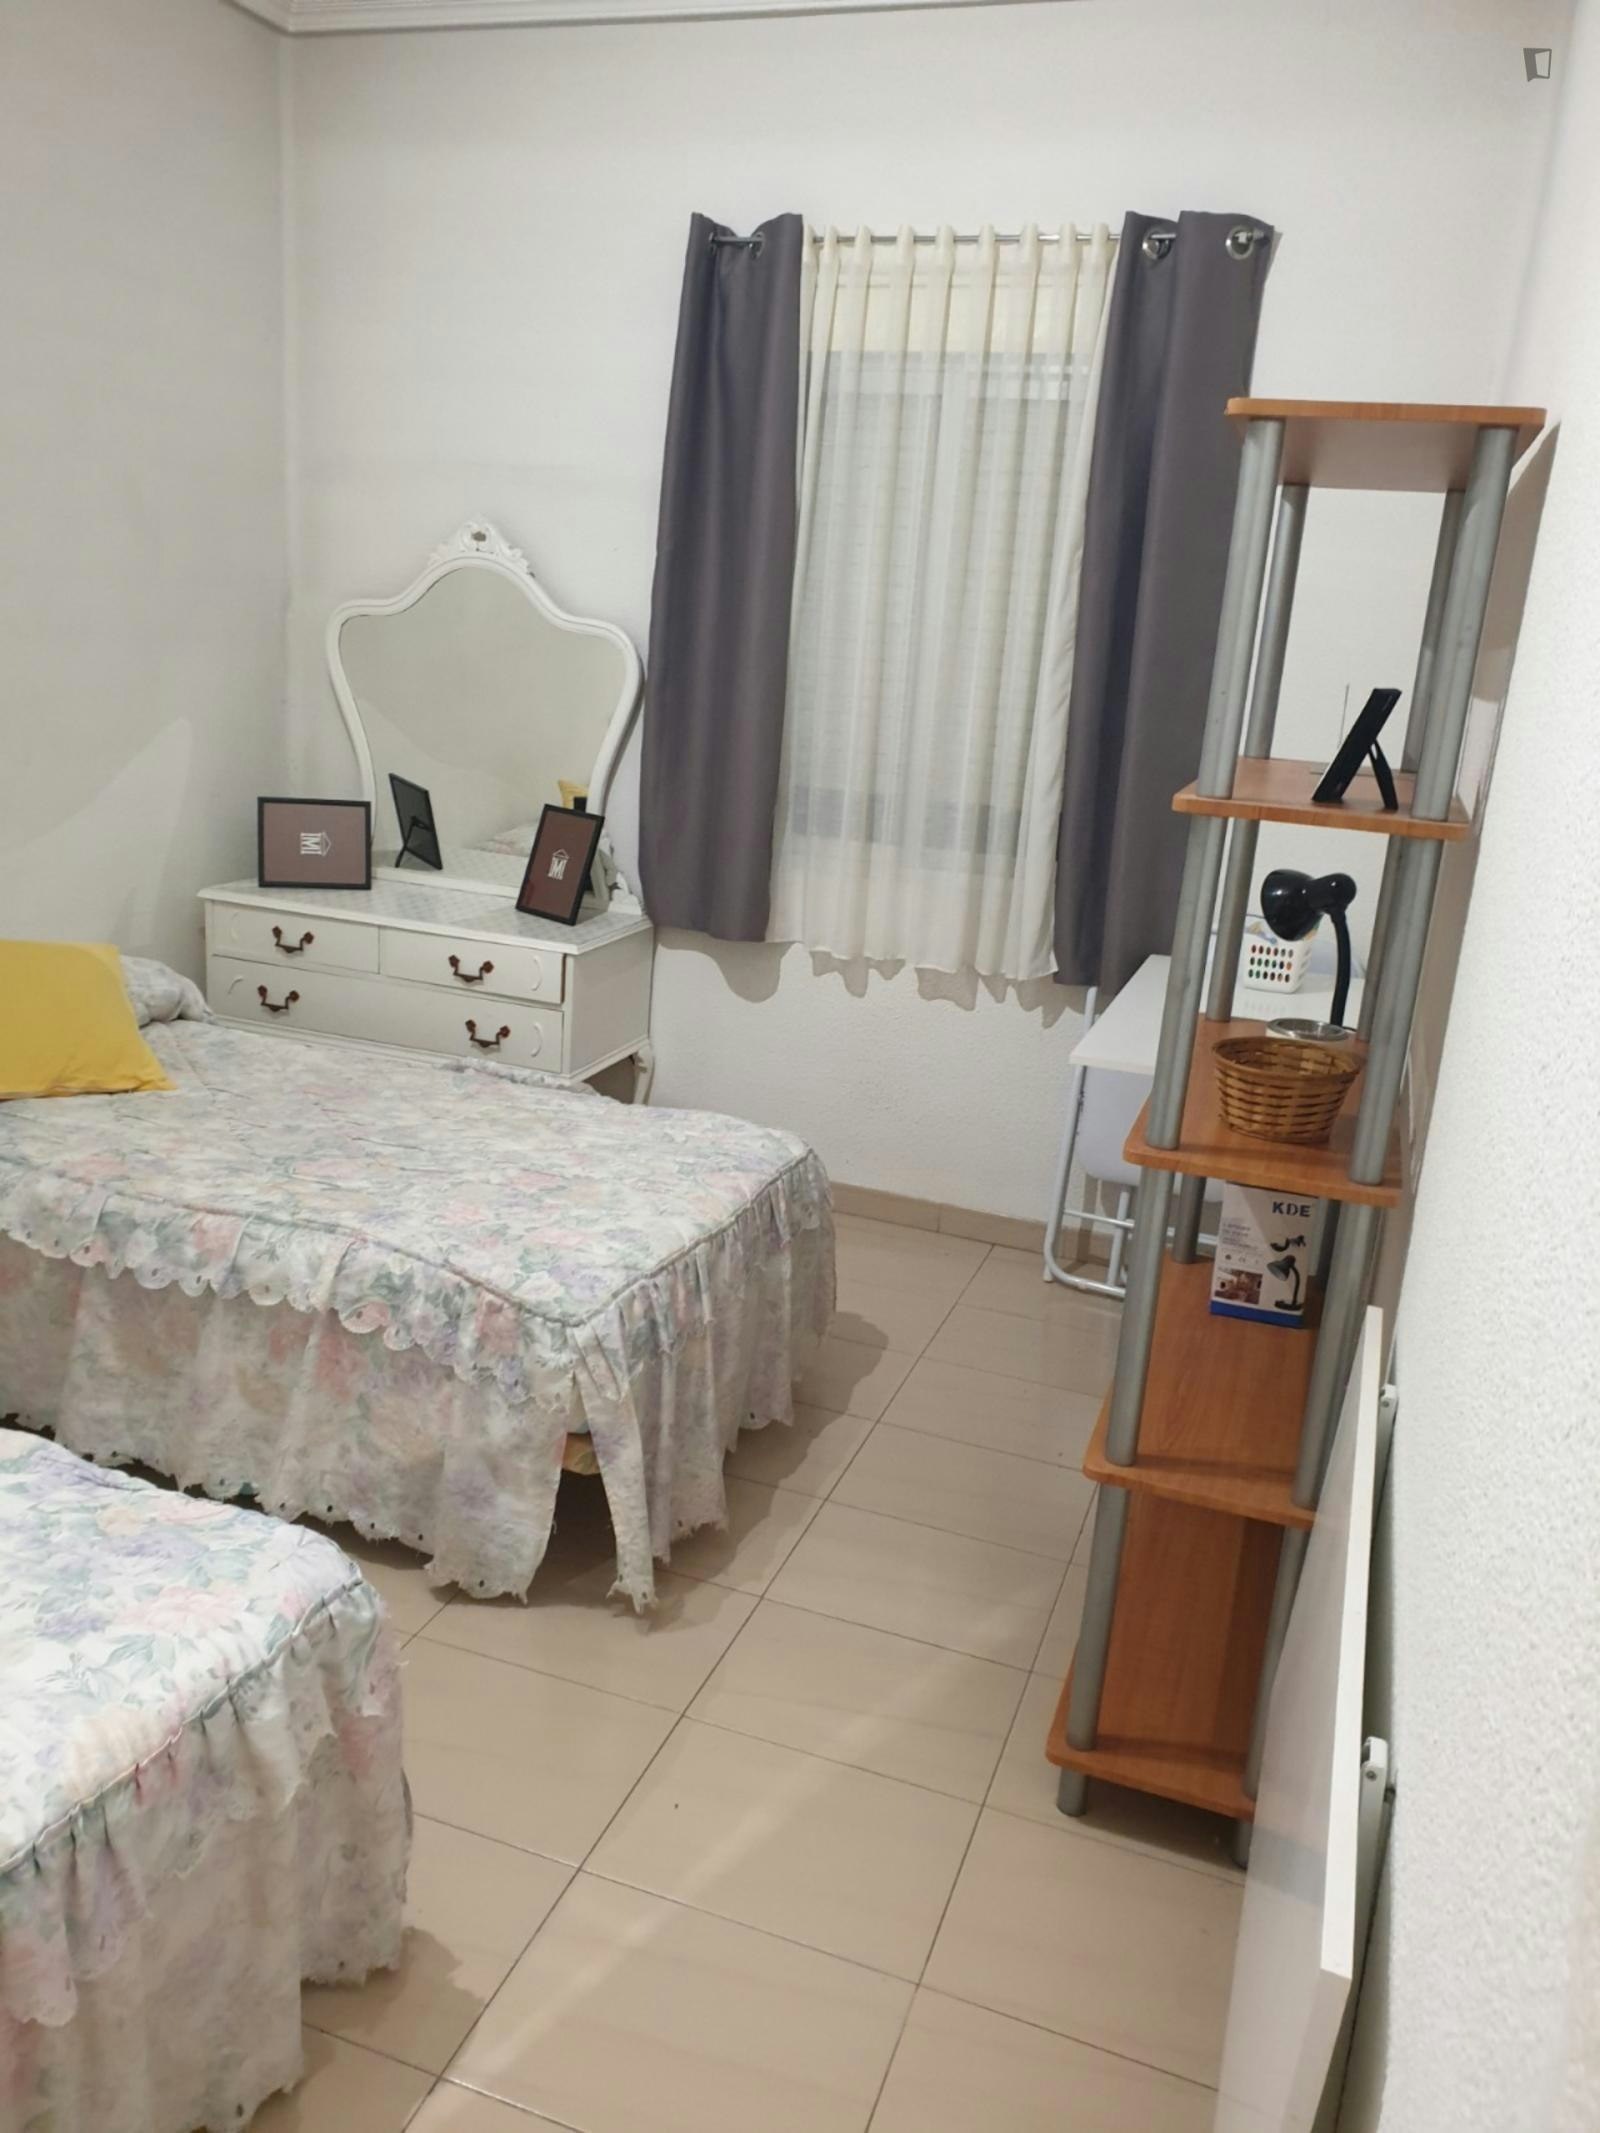 Twin bedroom in a 4-bedroom apartment near Campus Universitario de Ponferrada